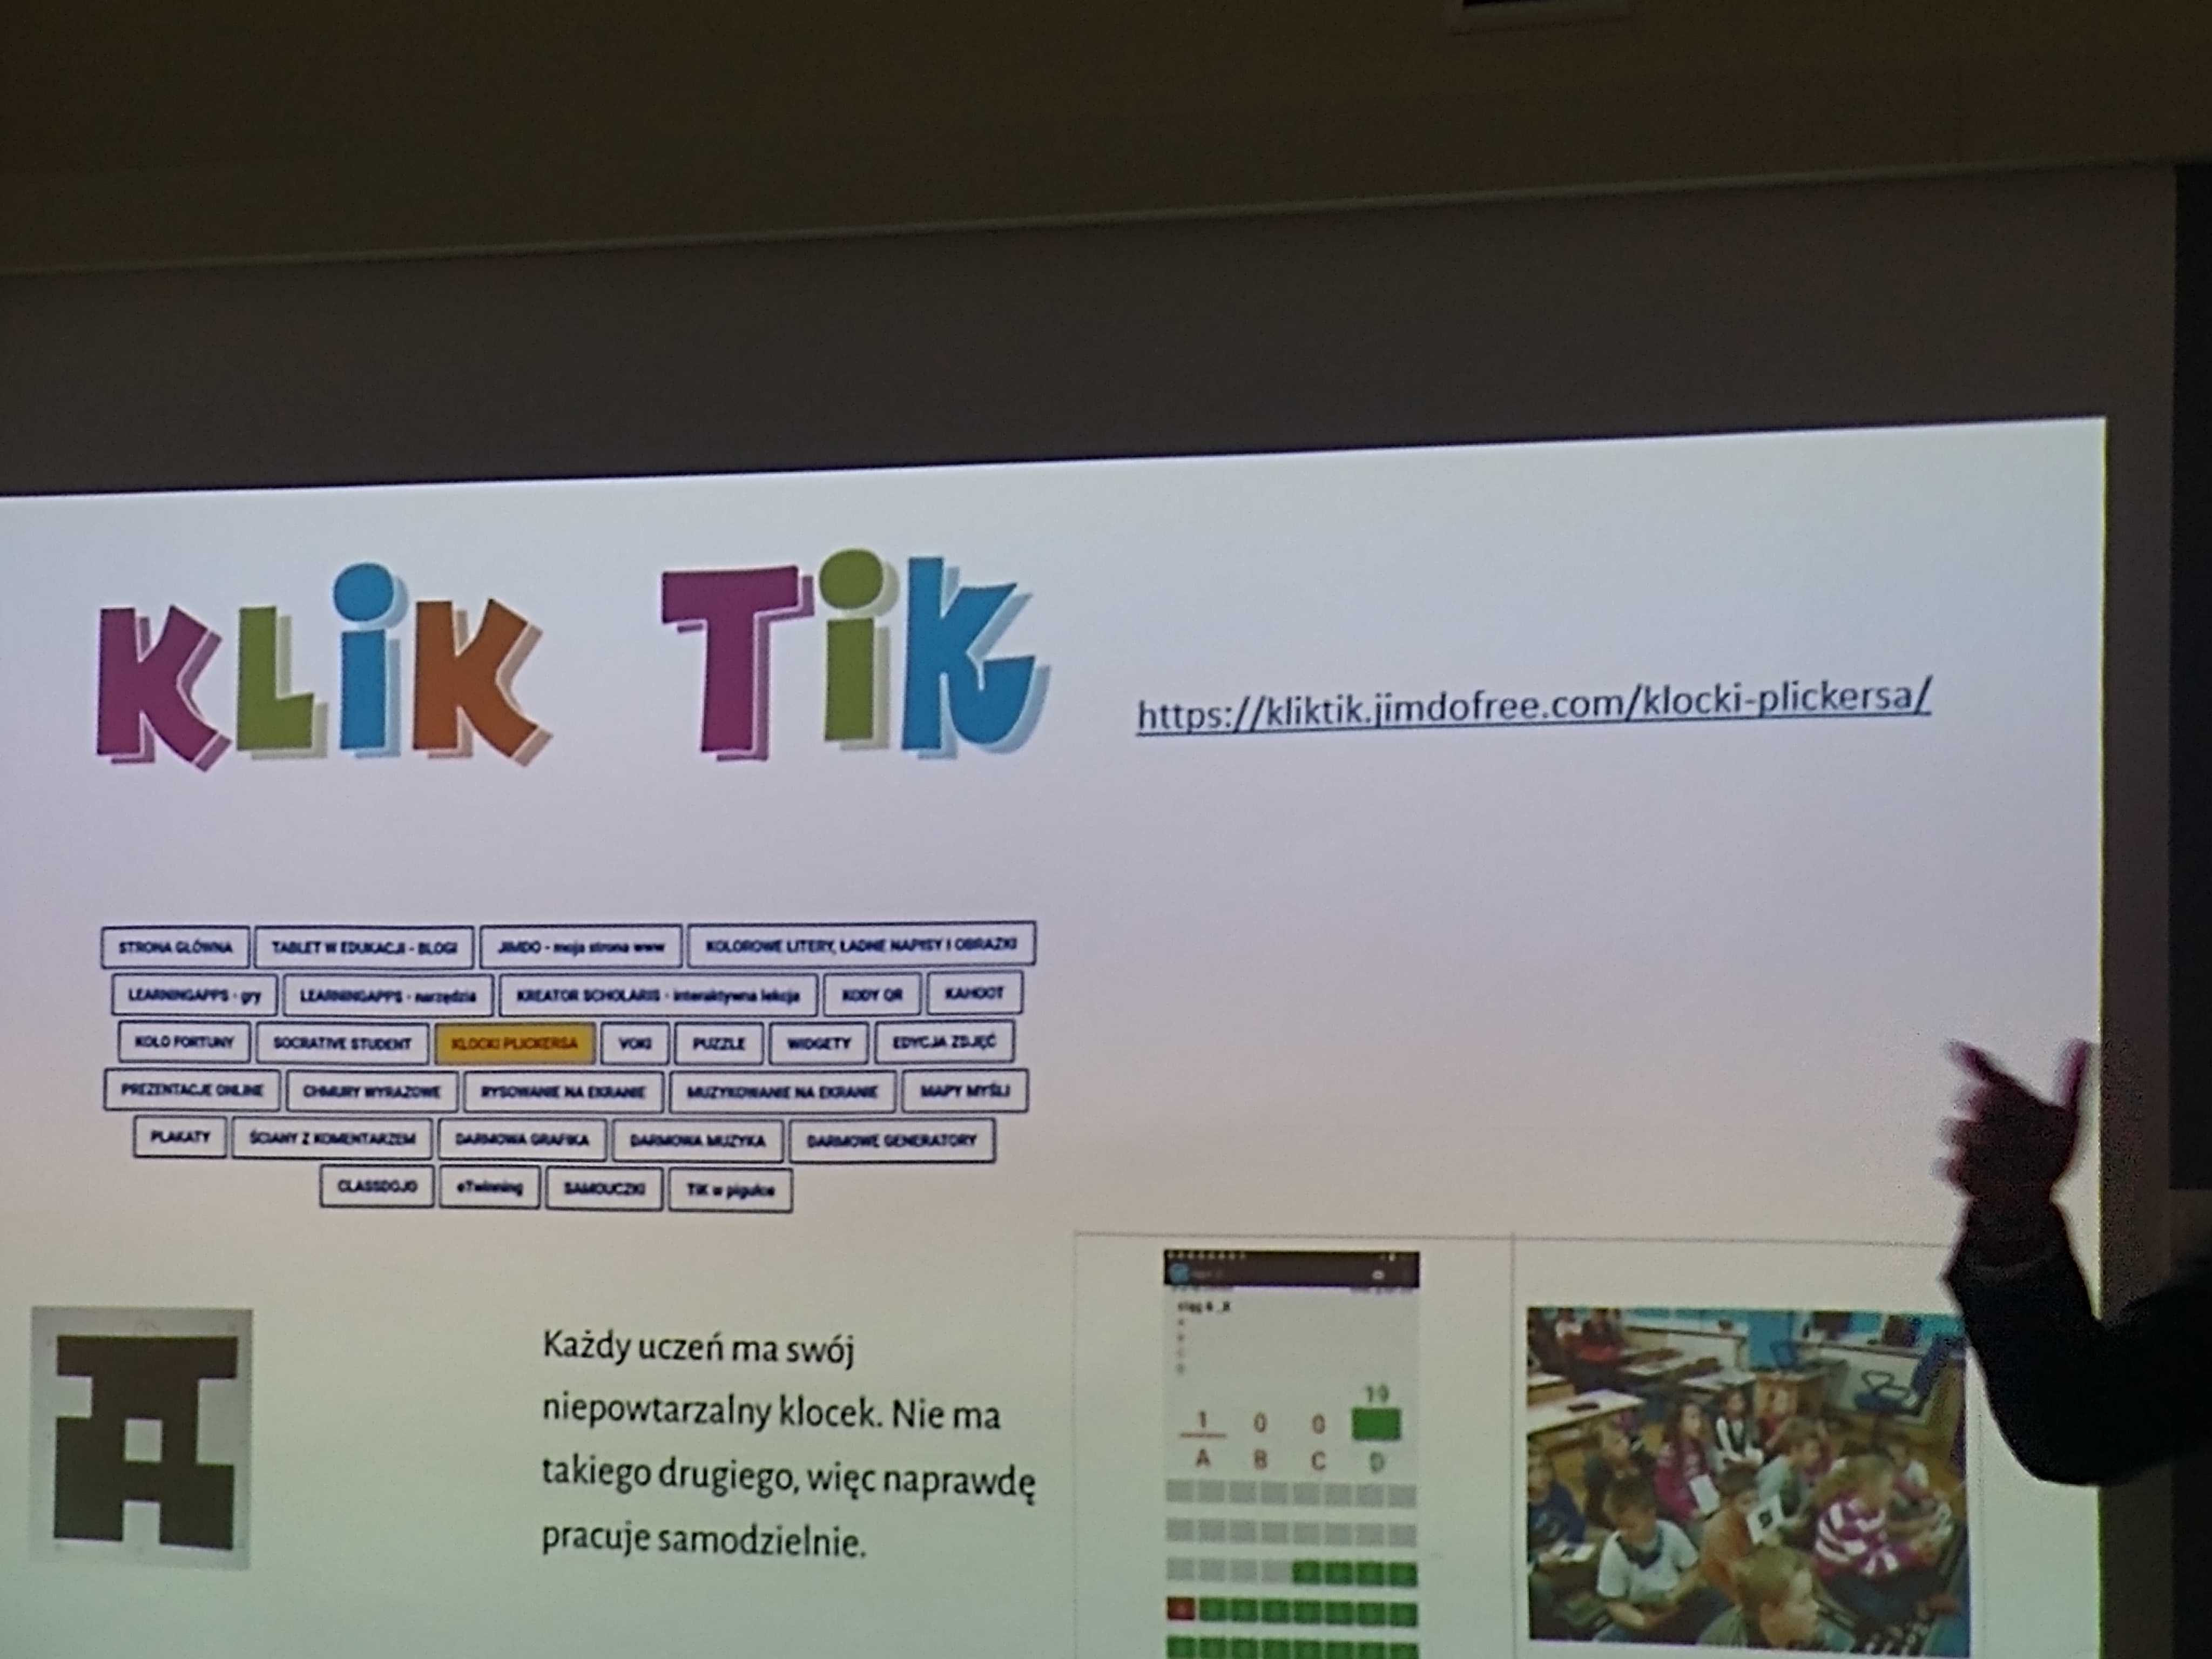 Prezentacja slajdu strona edukacyjna KLIK TIK